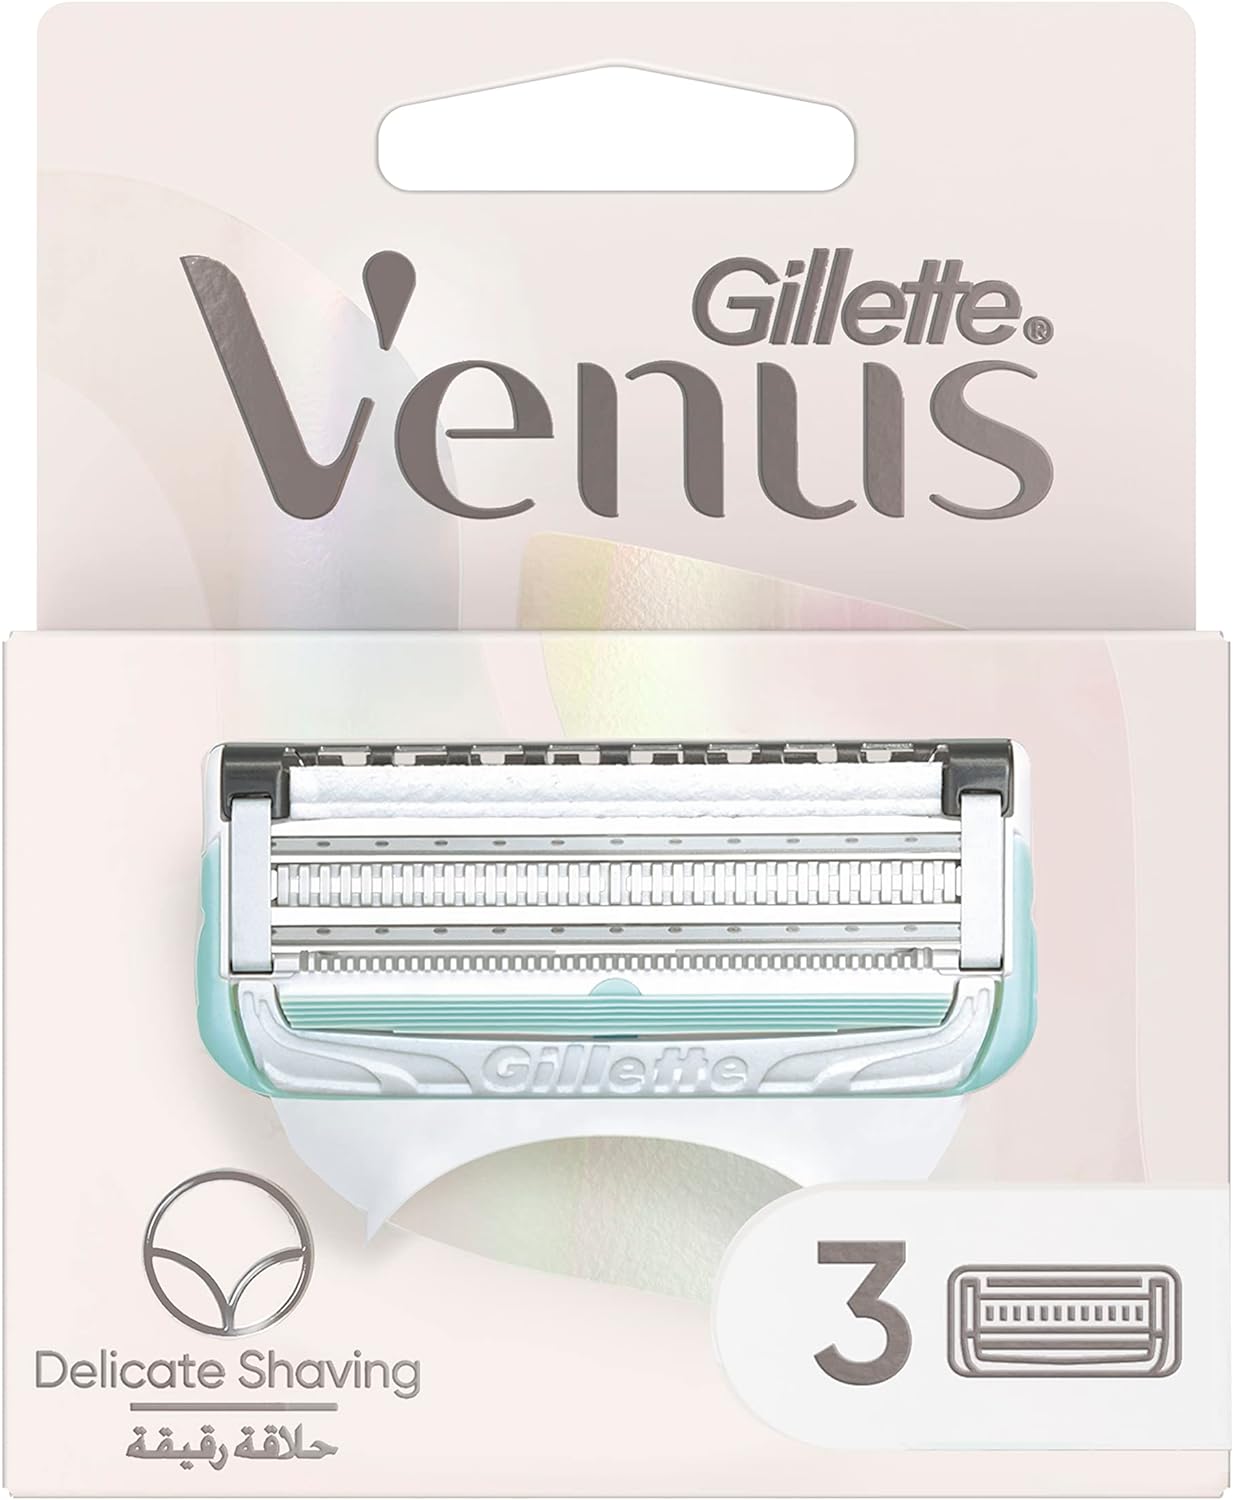 Gillette Venus Bikini Skin Care Razor Blade Refills with Precision Trimmer, 3 Count